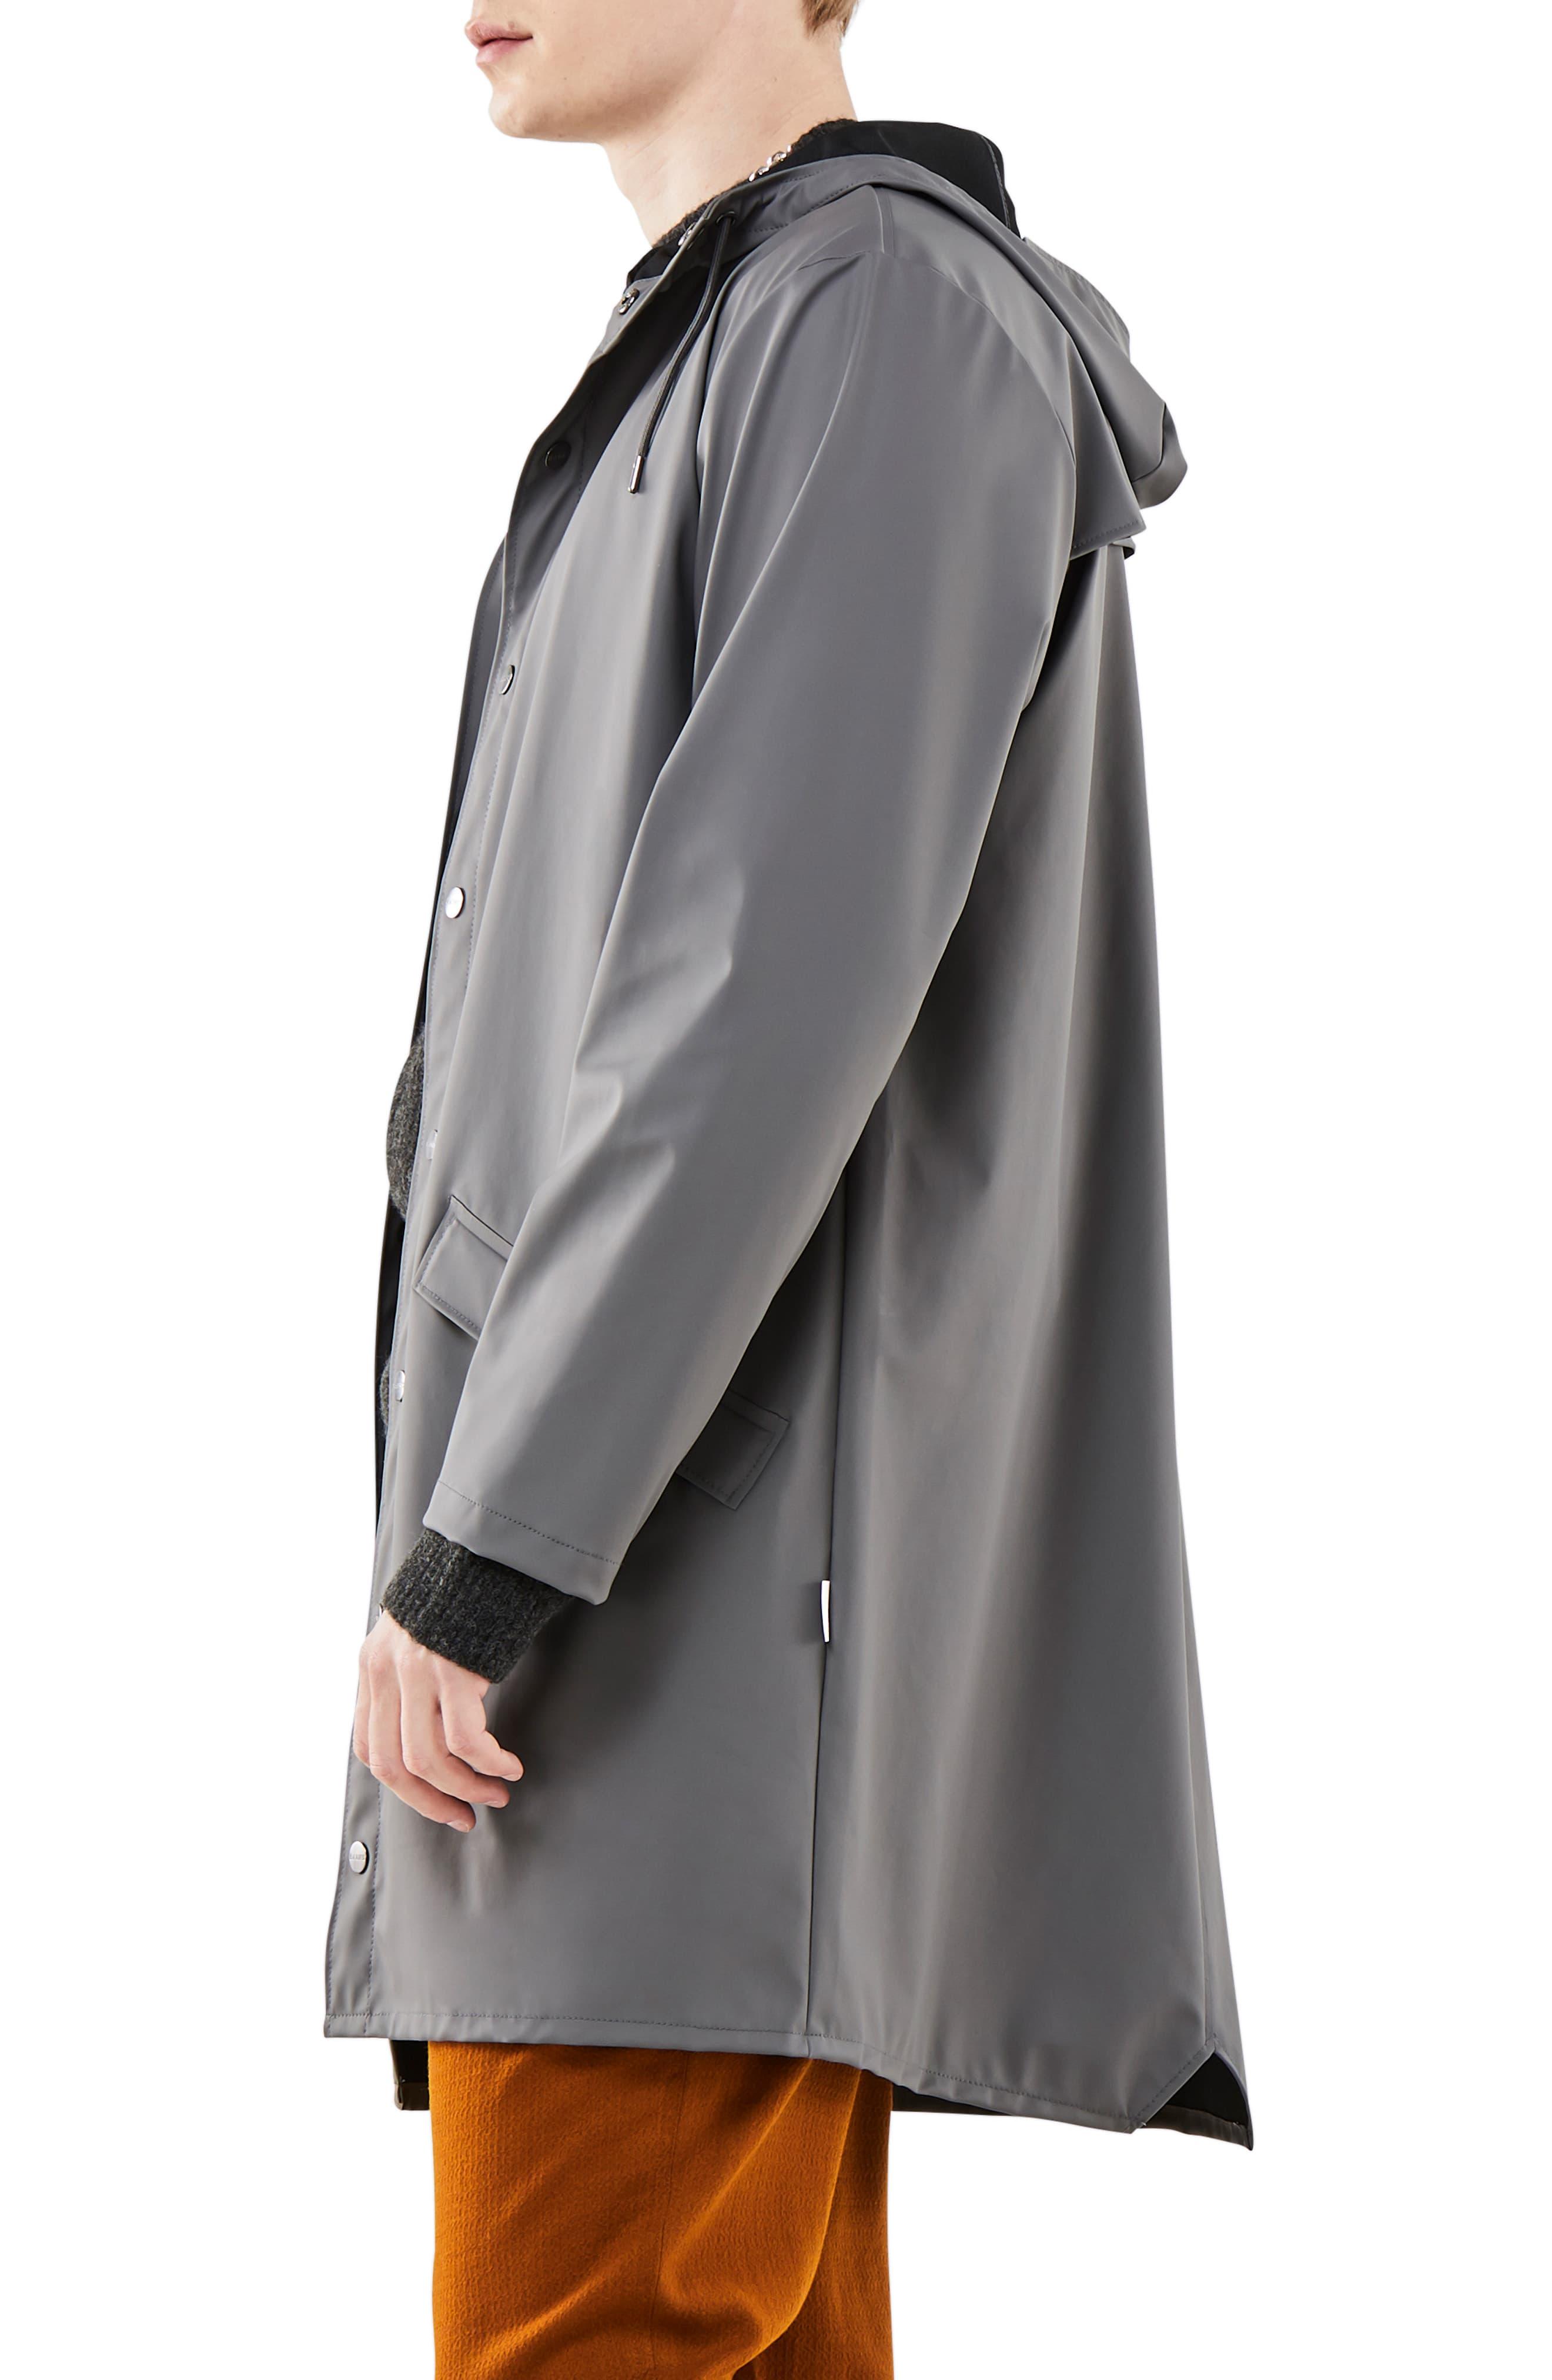 Rains Waterproof Hooded Long Rain Jacket in Charcoal (Gray) for Men - Lyst